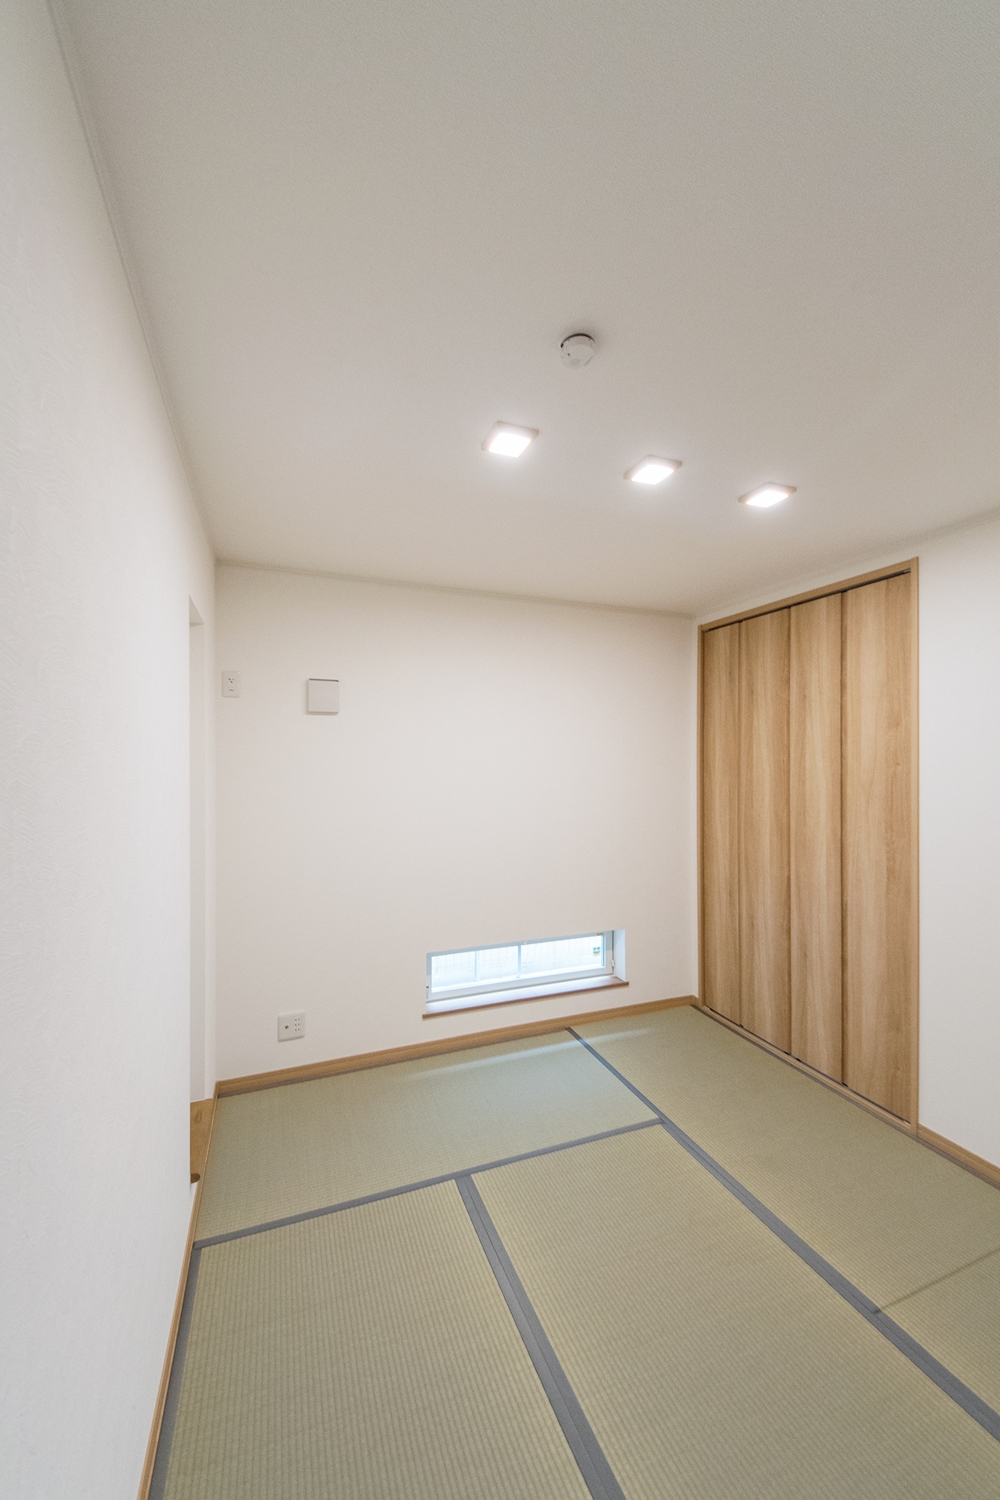 畳のさわやかなグリーンが空間を彩る1階畳敷き洋室。